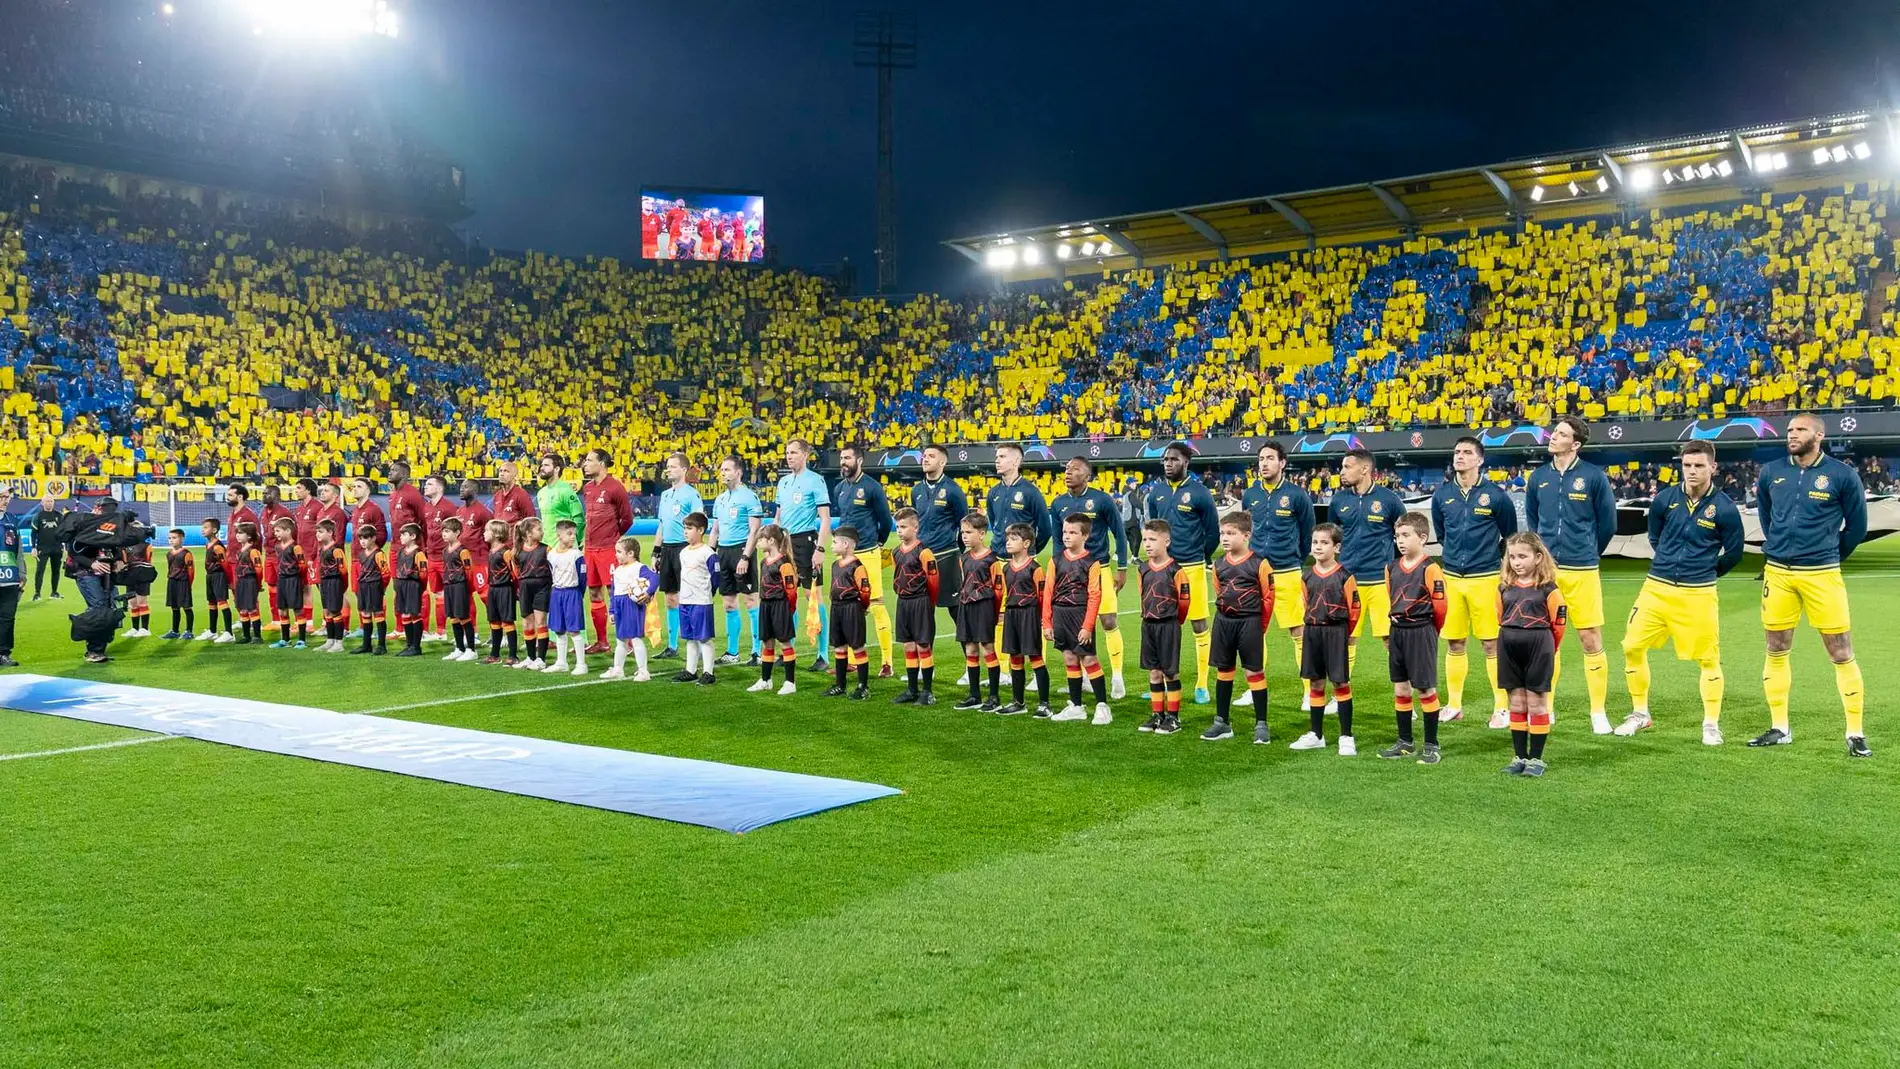 ¿Estará el Villarreal en Europa la próxima temporada?